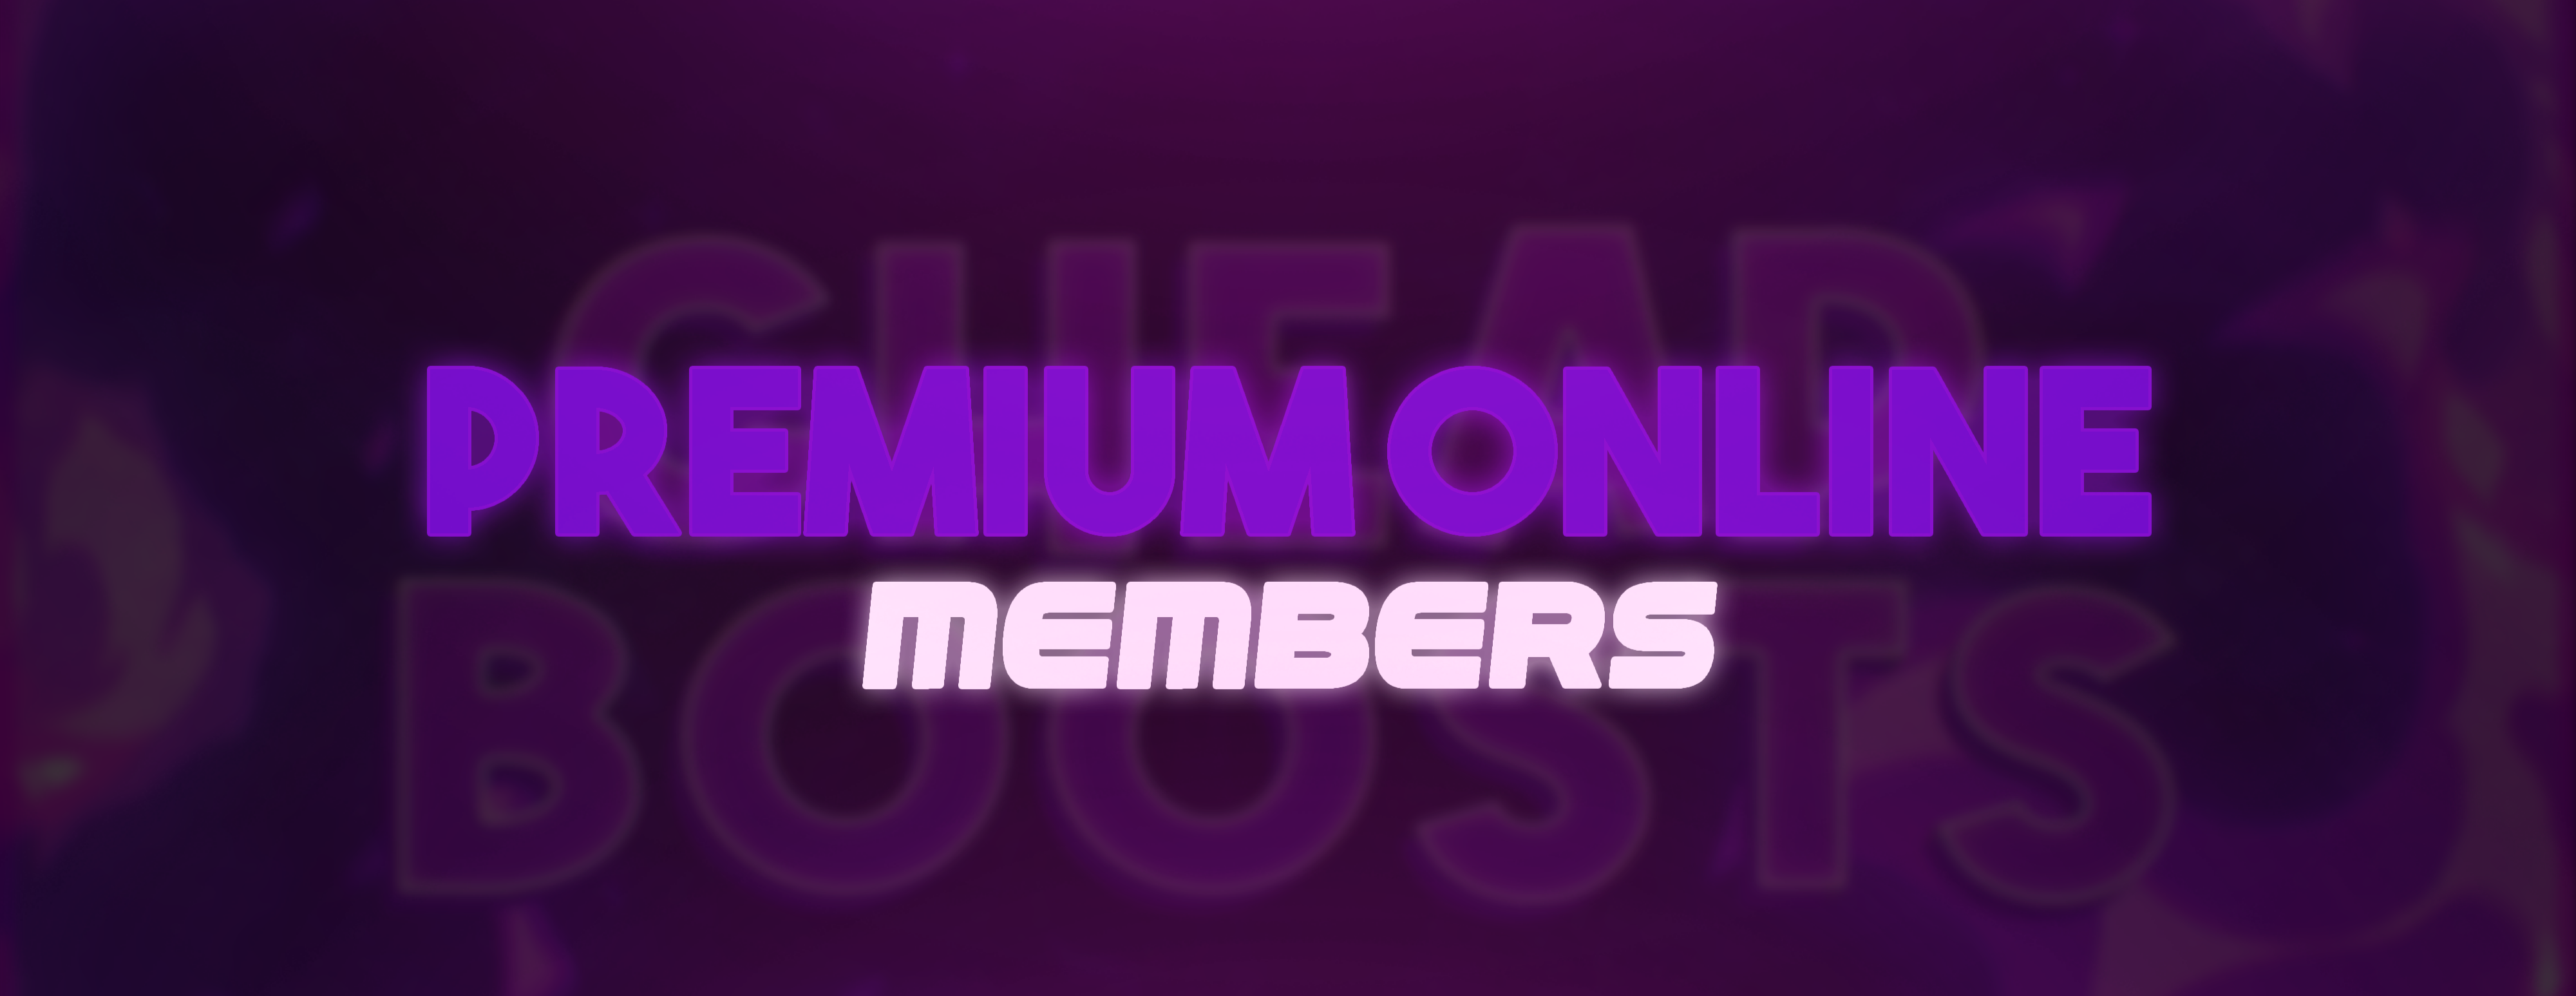 Premium Online Members 